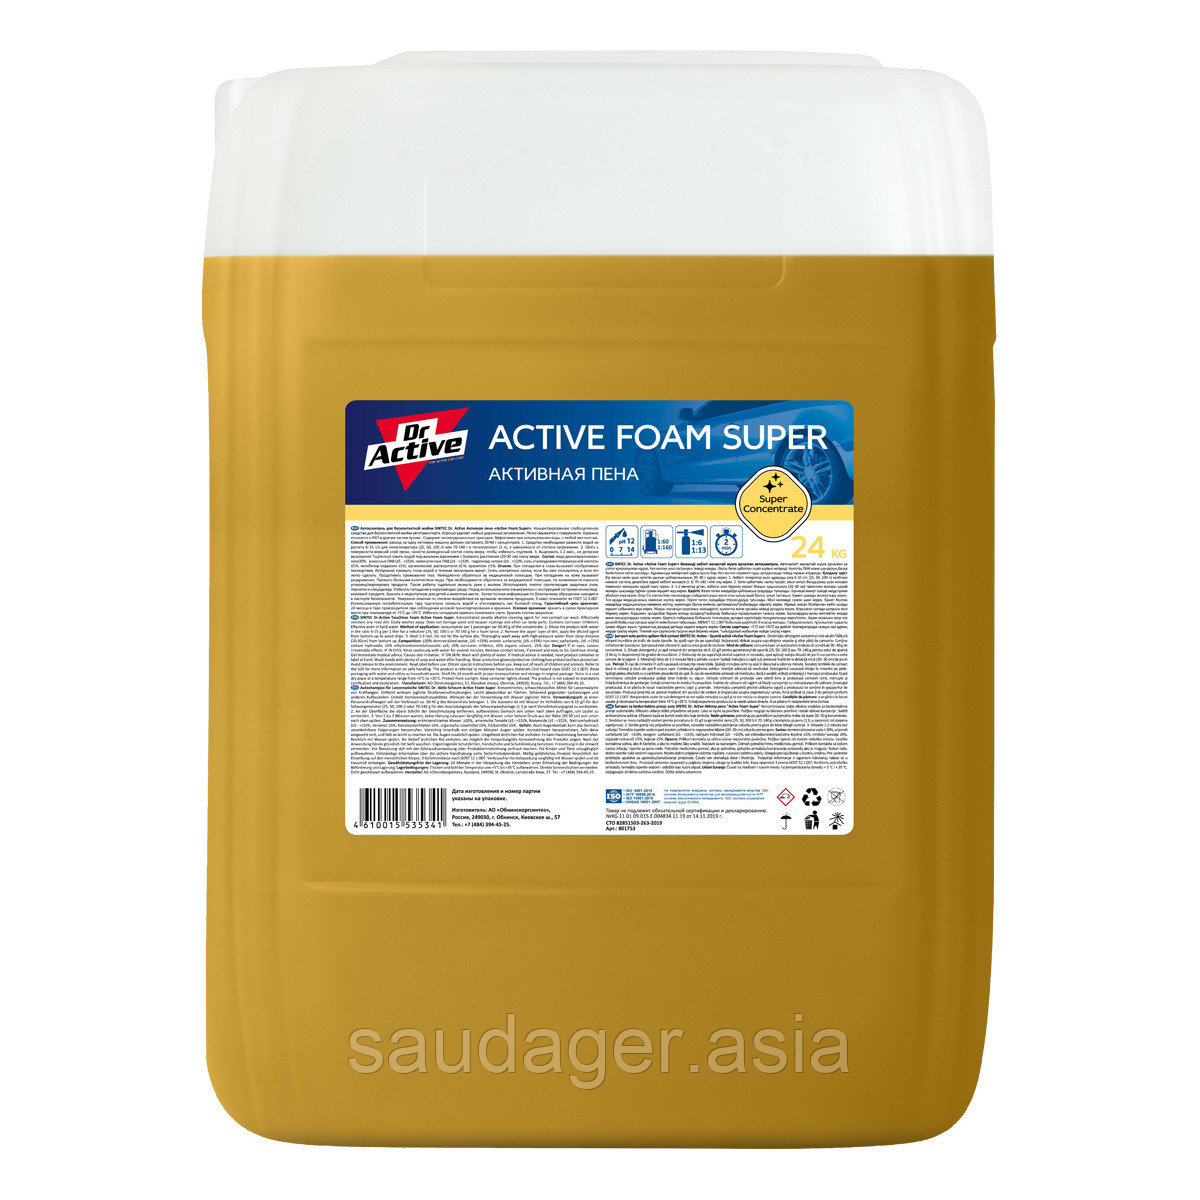 Sintec Dr. Active Активная пена "Active Foam Super" (24 кг)